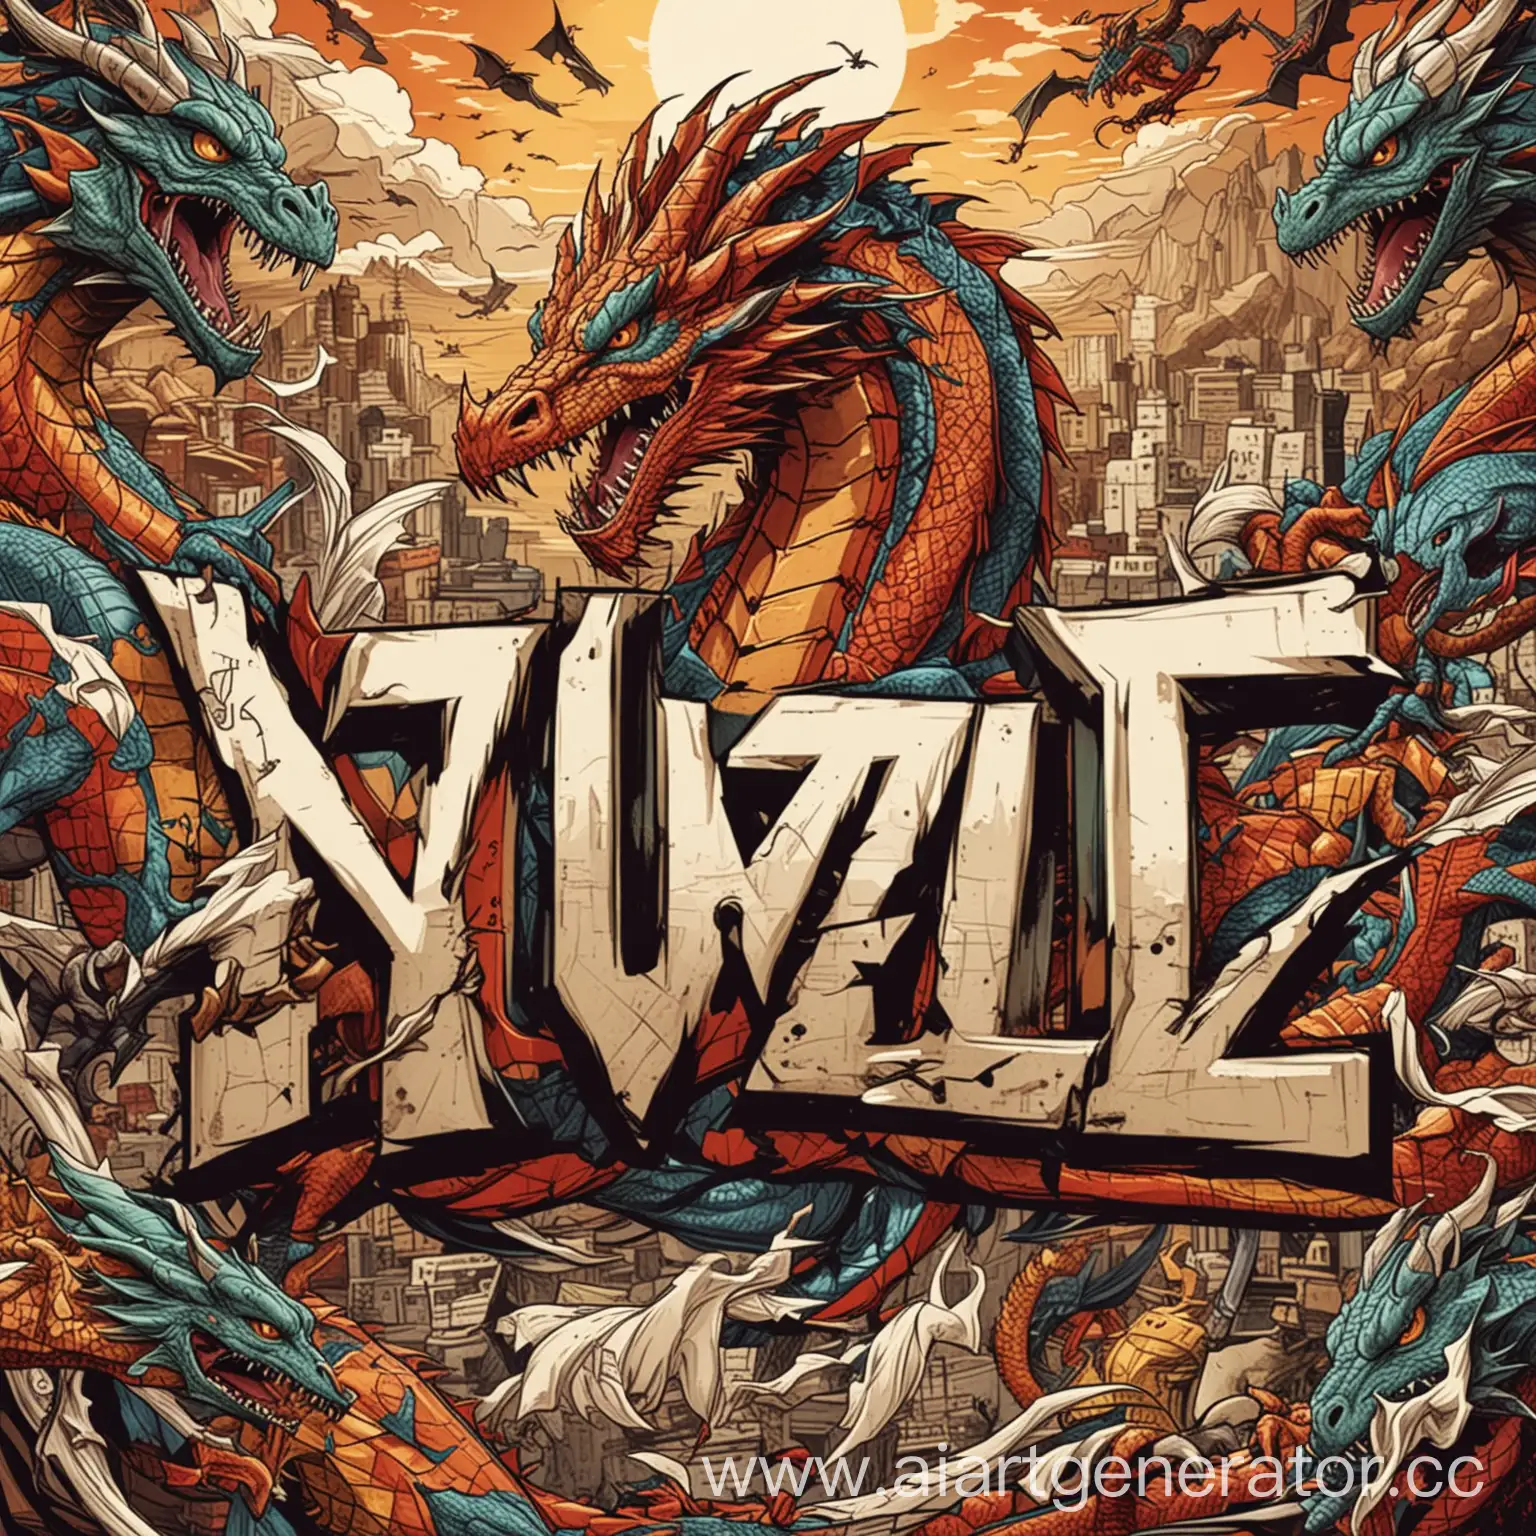 по середине слово VUZI, на заднем фоне картинки из разных игры, всё в виде комиксов, буква Z в надписи в виде дракона.